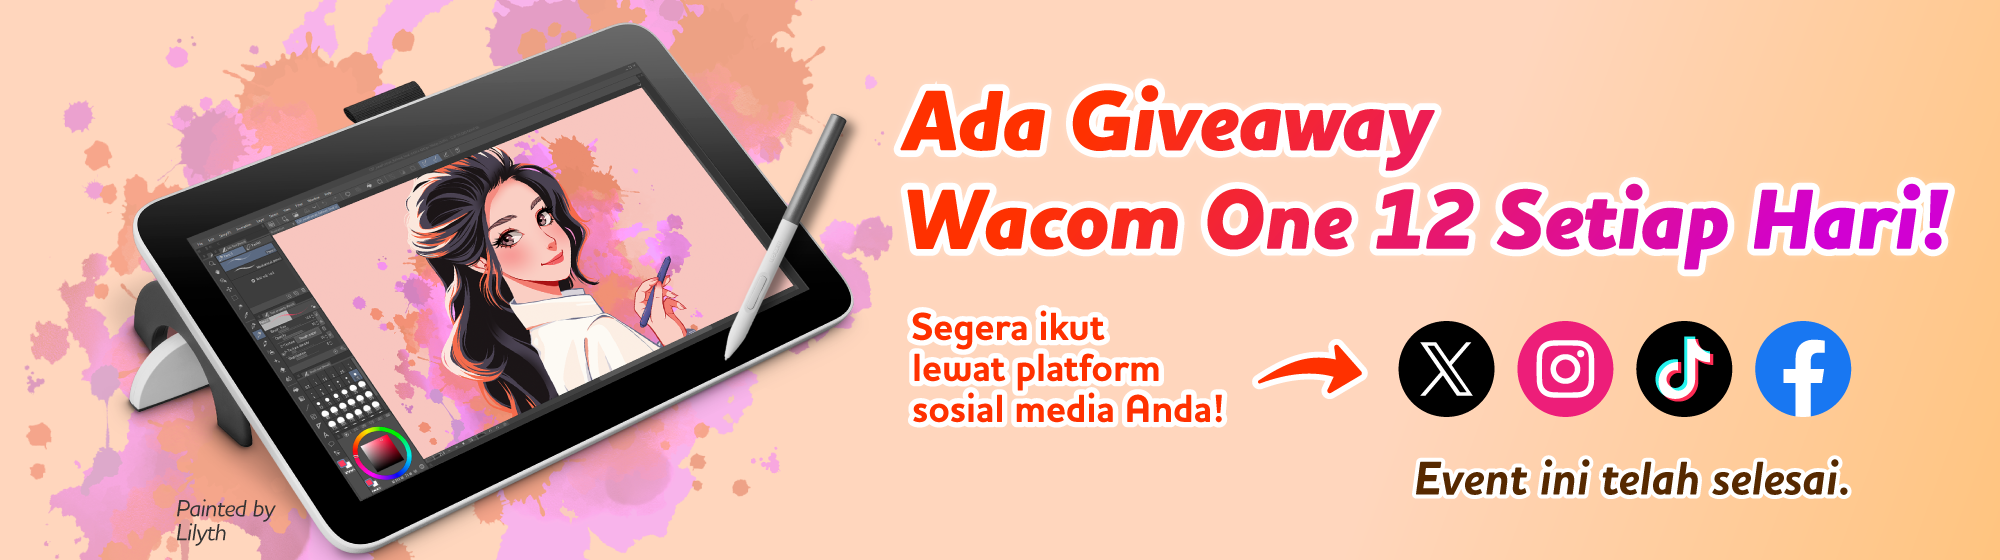 Ada Giveaway Wacom One 12 Setiap Hari! Segera ikut lewat platform sosial media Anda!